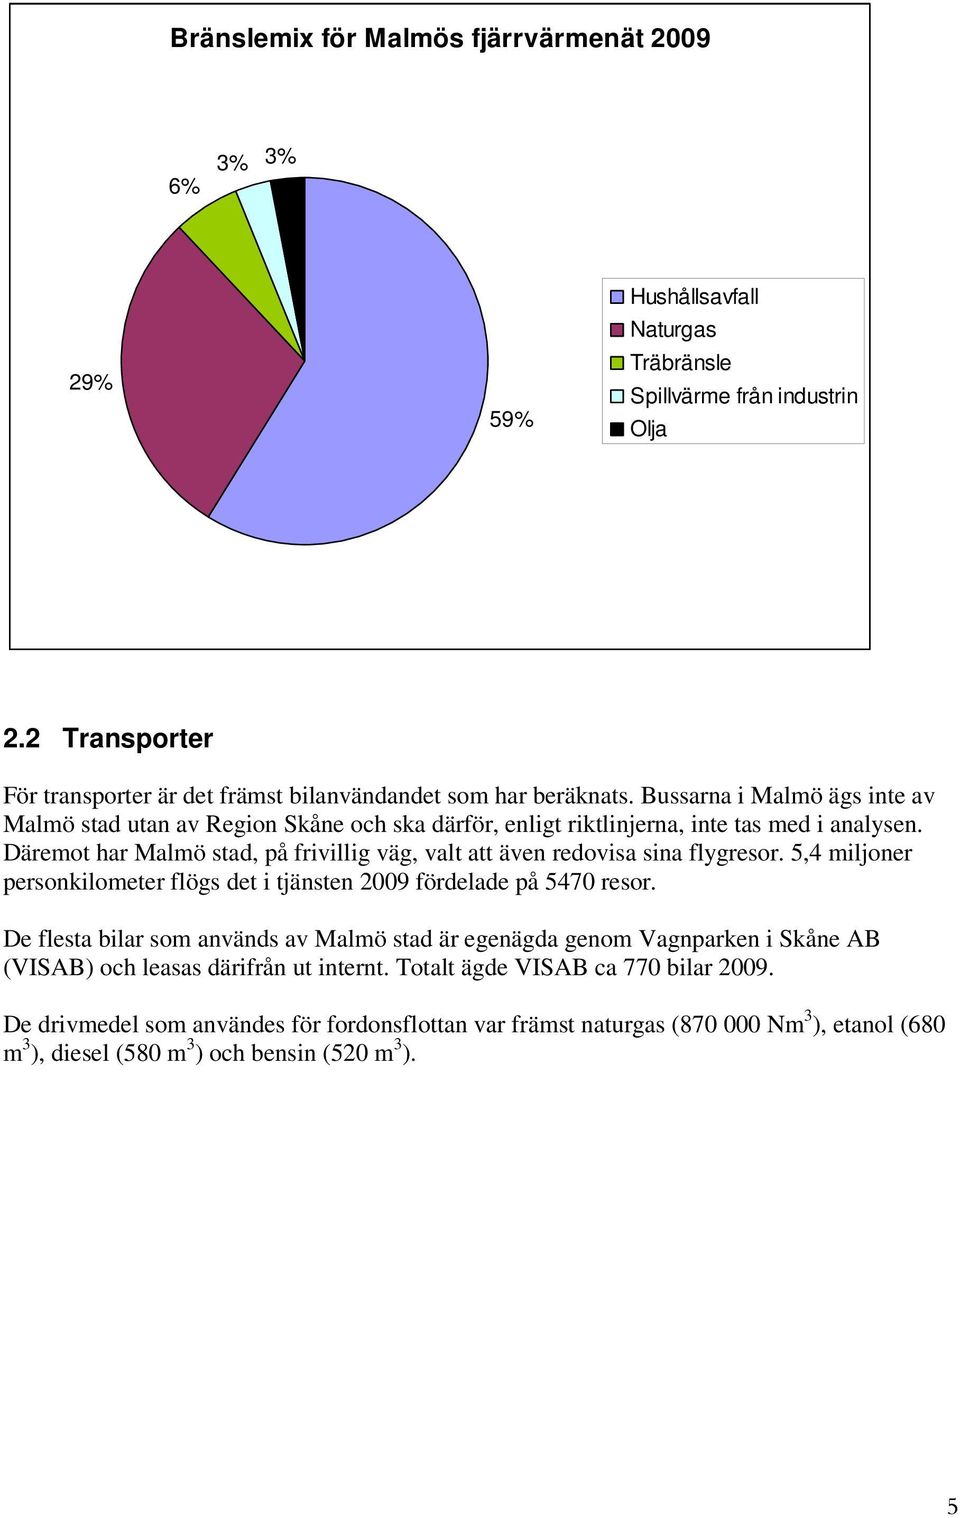 Bussarna i Malmö ägs inte av Malmö stad utan av Region Skåne och ska därför, enligt riktlinjerna, inte tas med i analysen.